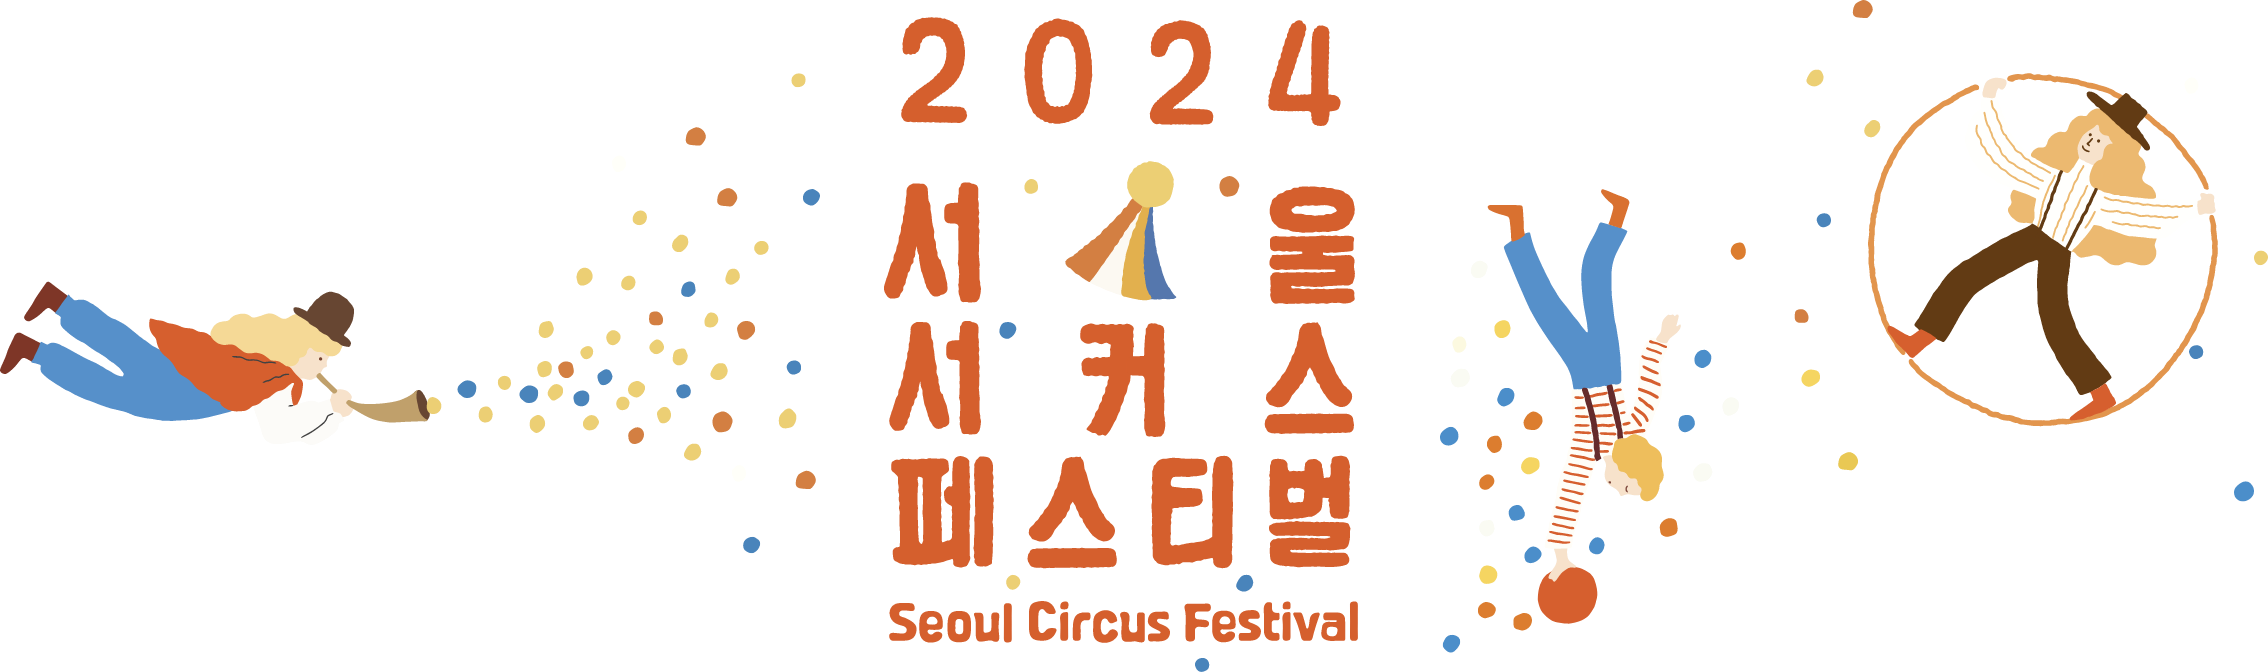 2024 Seoul Circus Festival